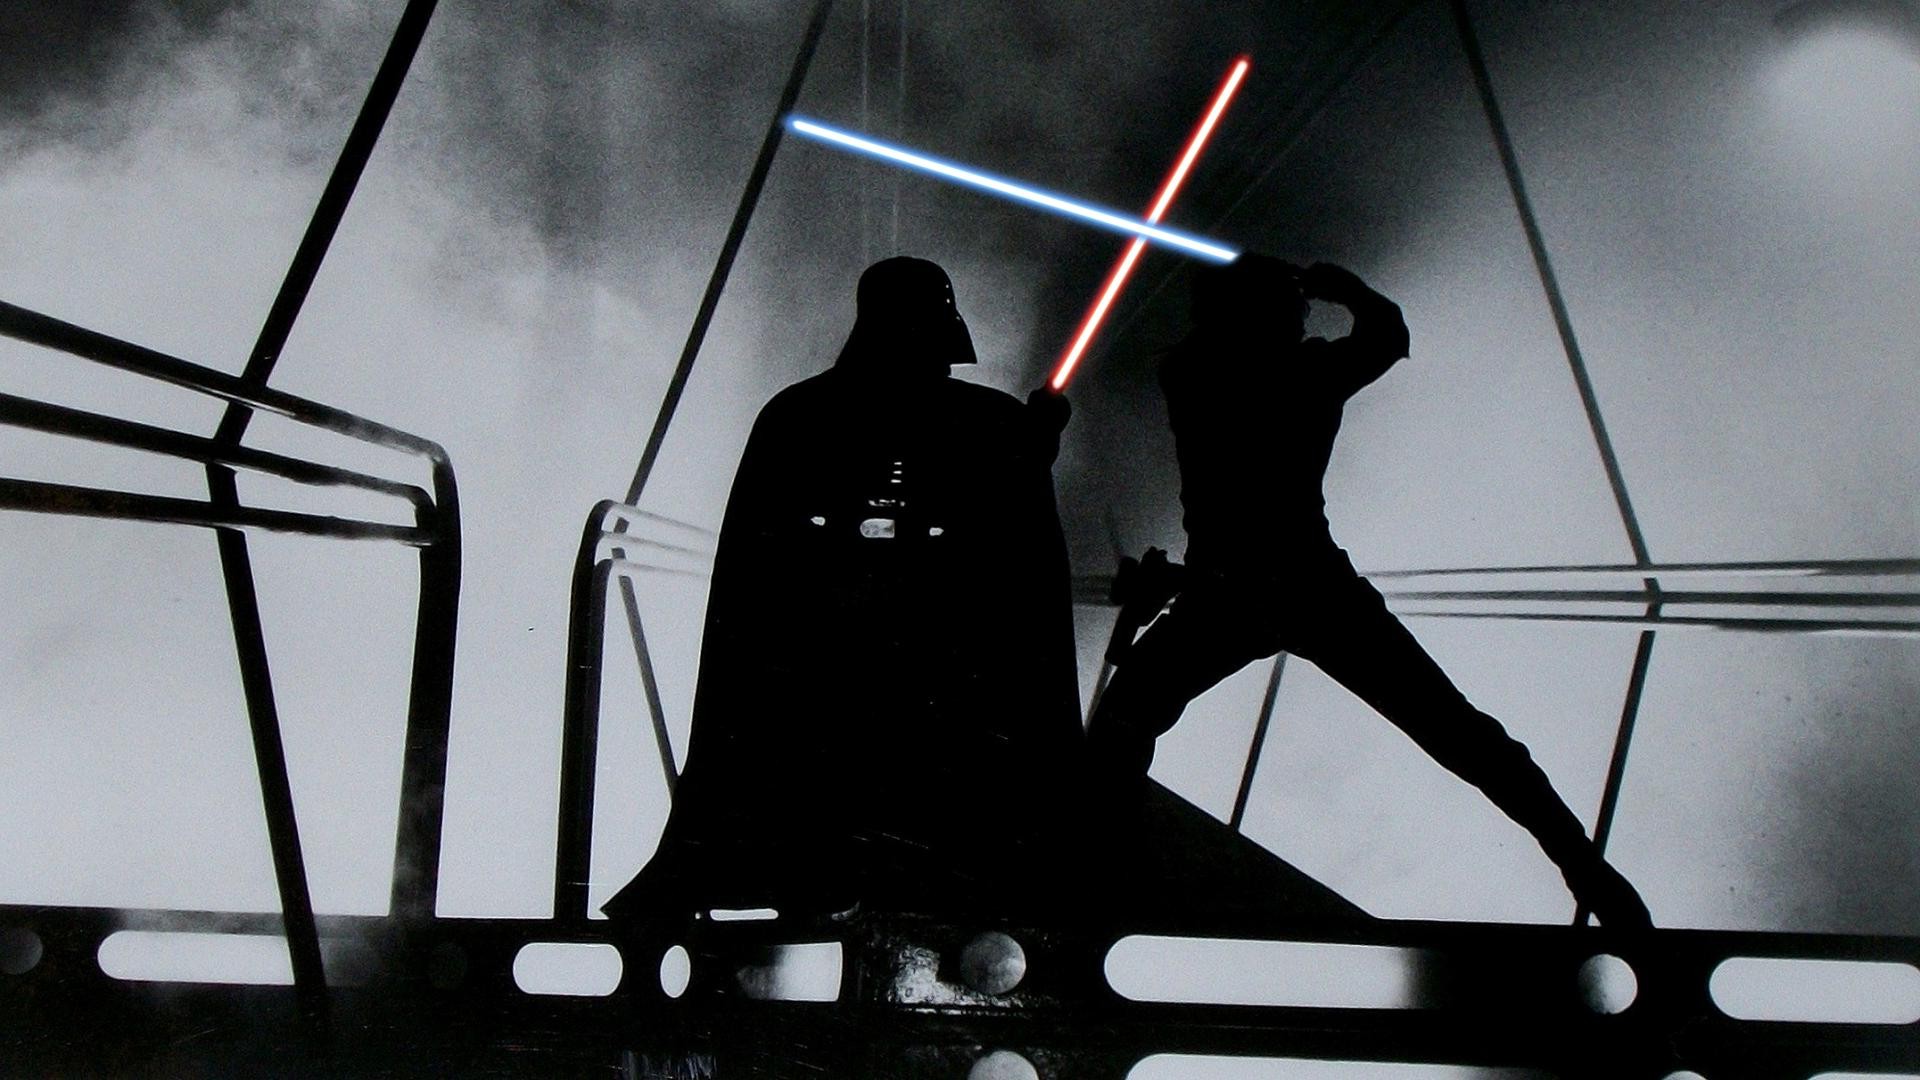 Star Wars, Lightsaber, Darth Vader, Luke Skywalker Wallpaper